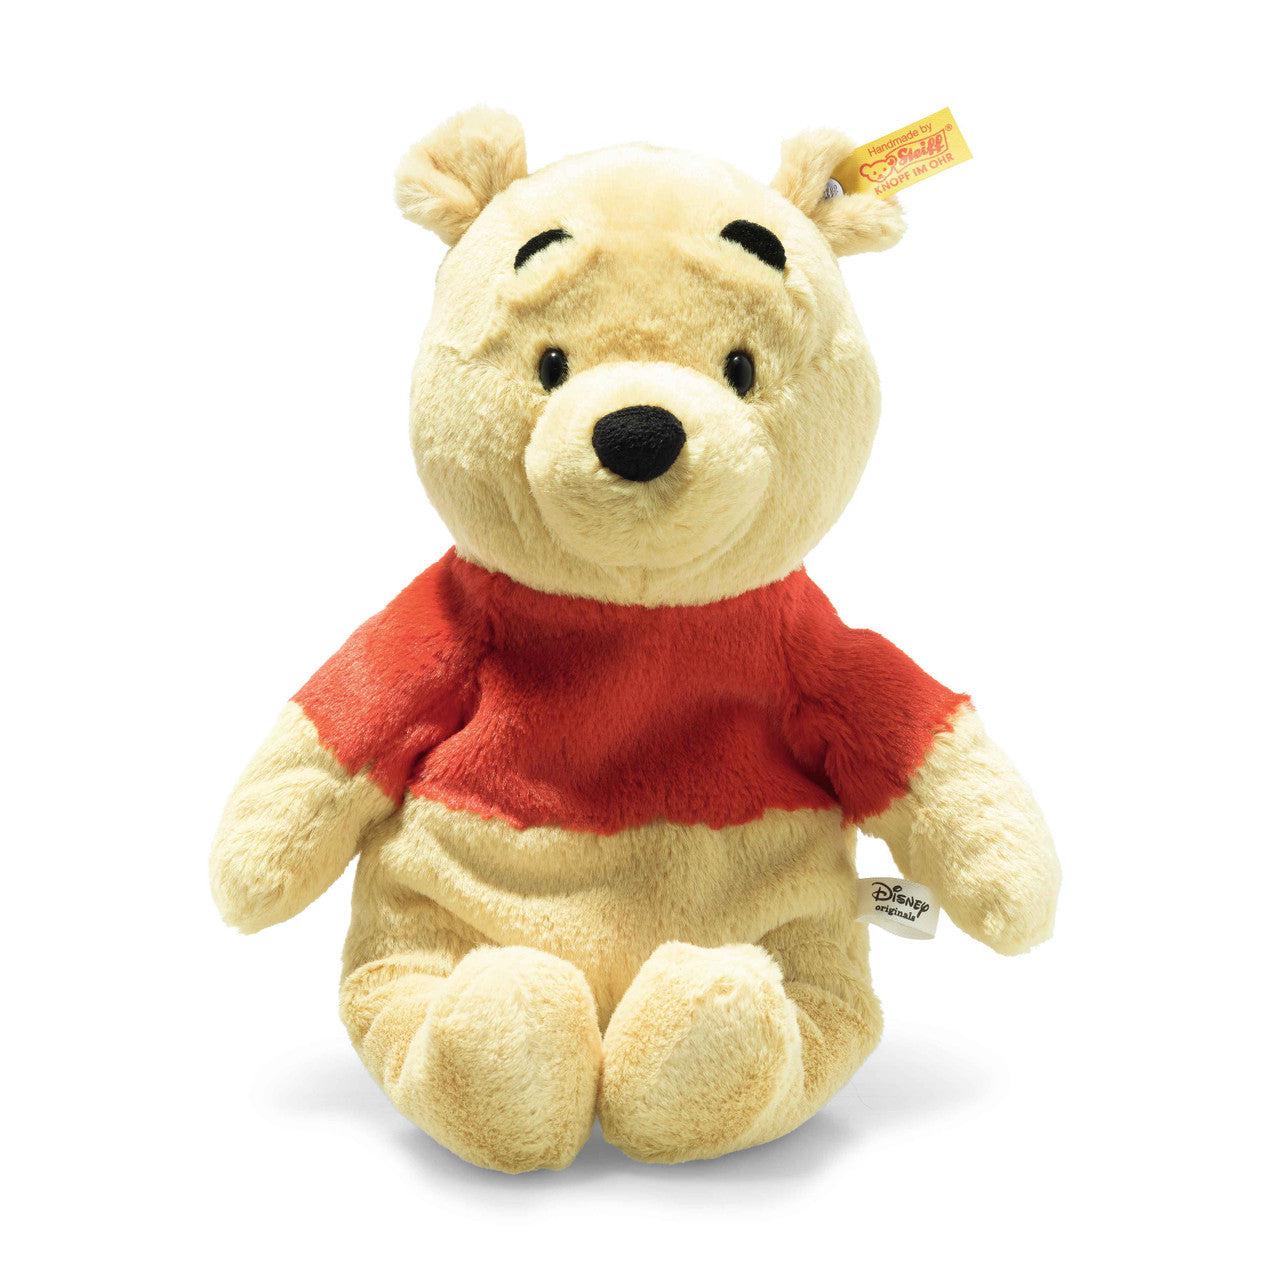 Steiff-Disney Winnie the Pooh Blonde 11